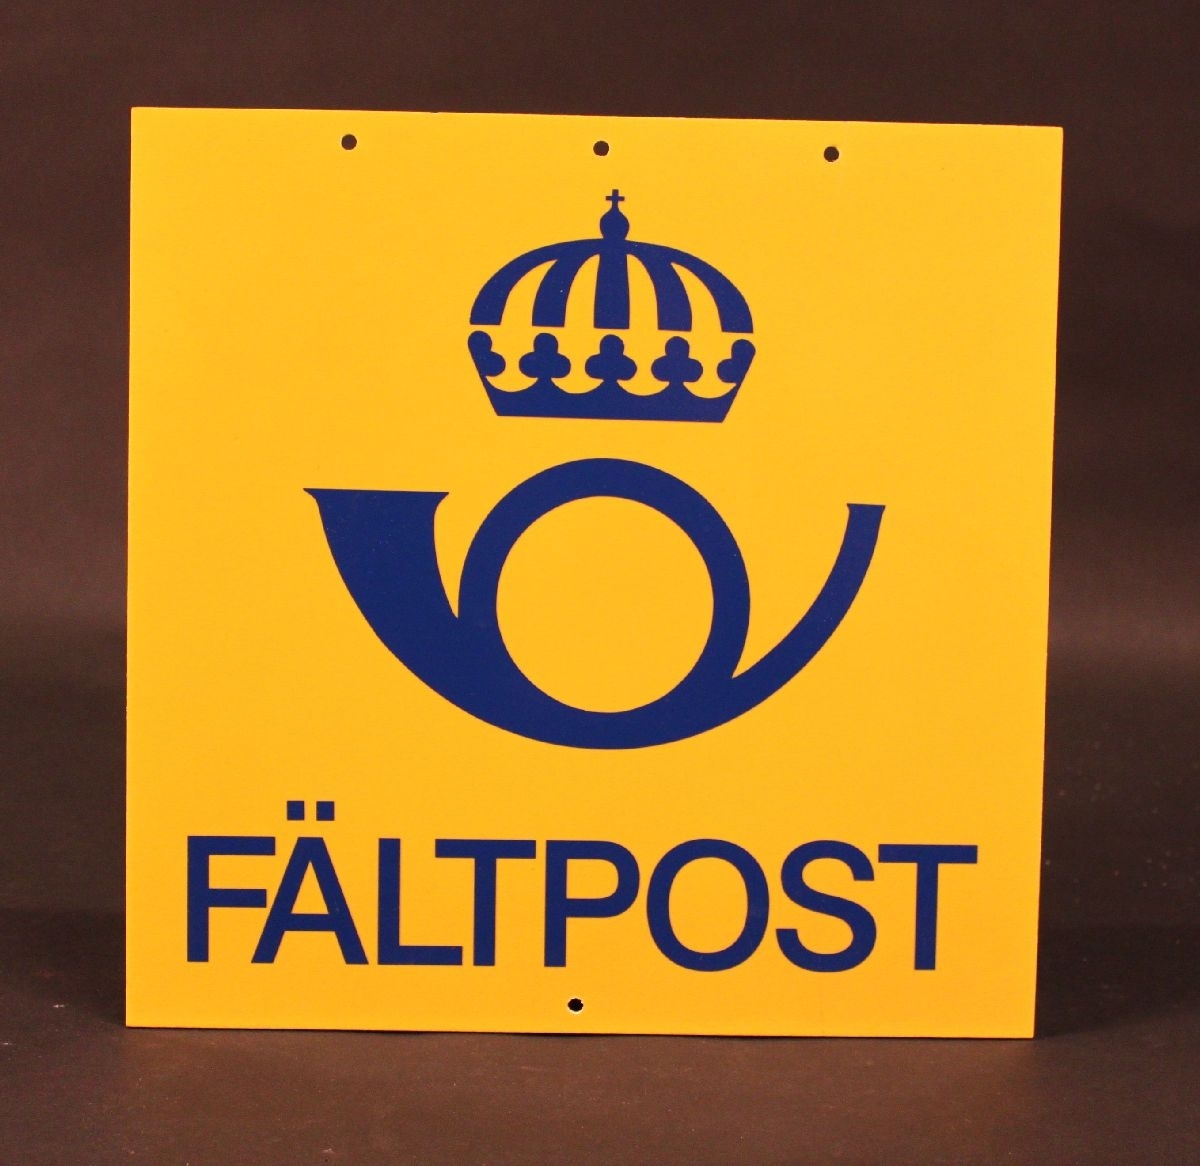 Skylt i papp med gul bakgrund och en blå postsymbol, modell 1965 och ordet: Fältpost i blått i nederkant. Postsymbolen är i plast och är påklistrade.